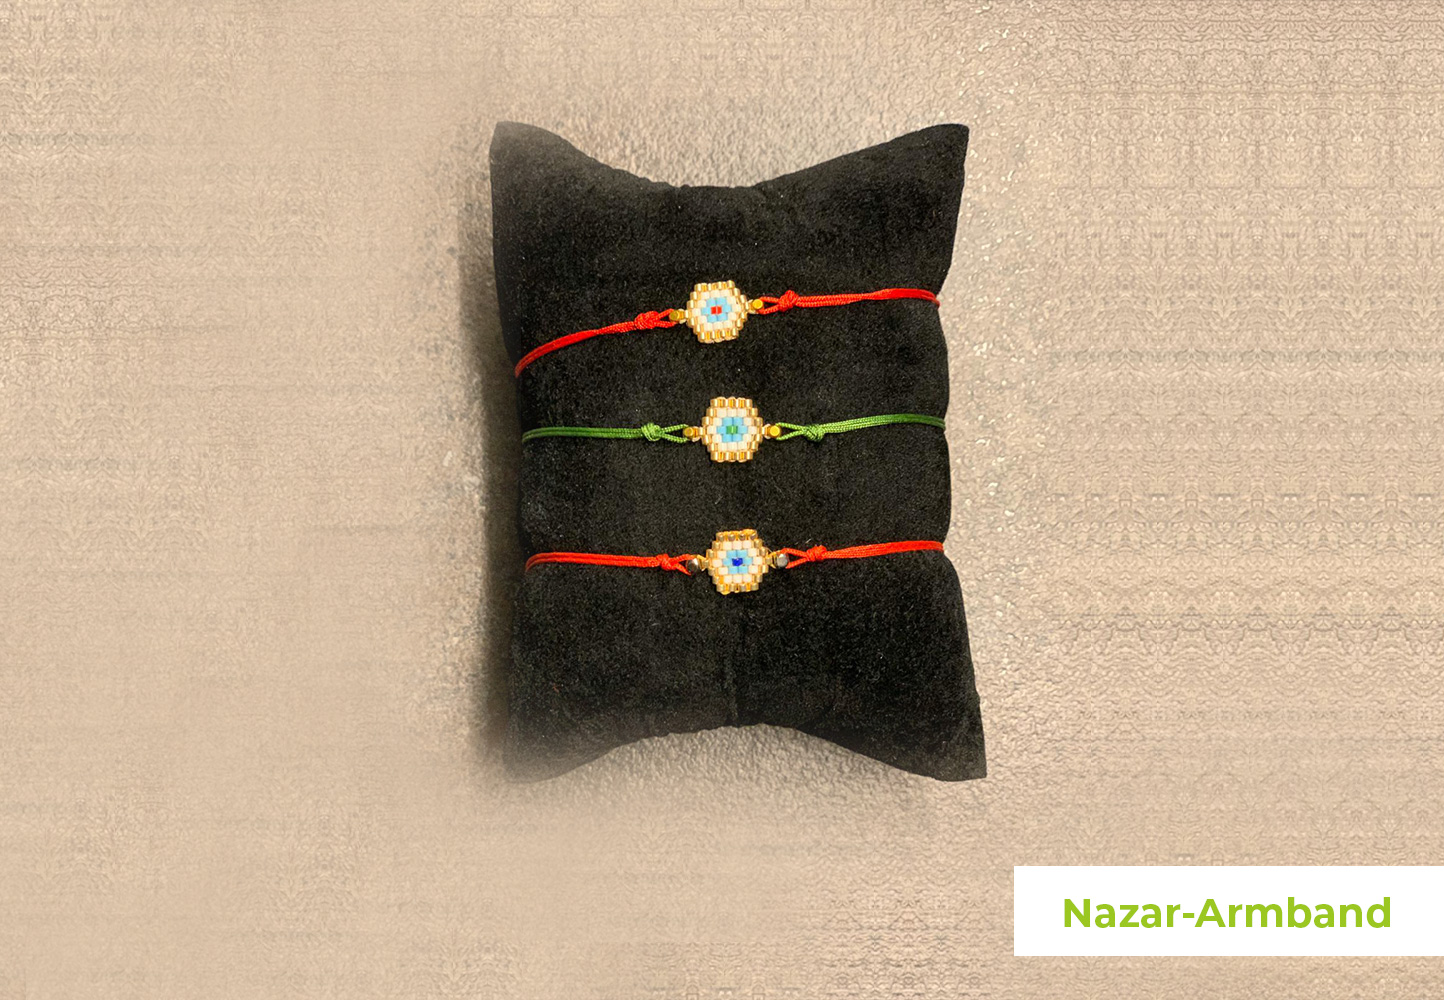 Nazar-Armband